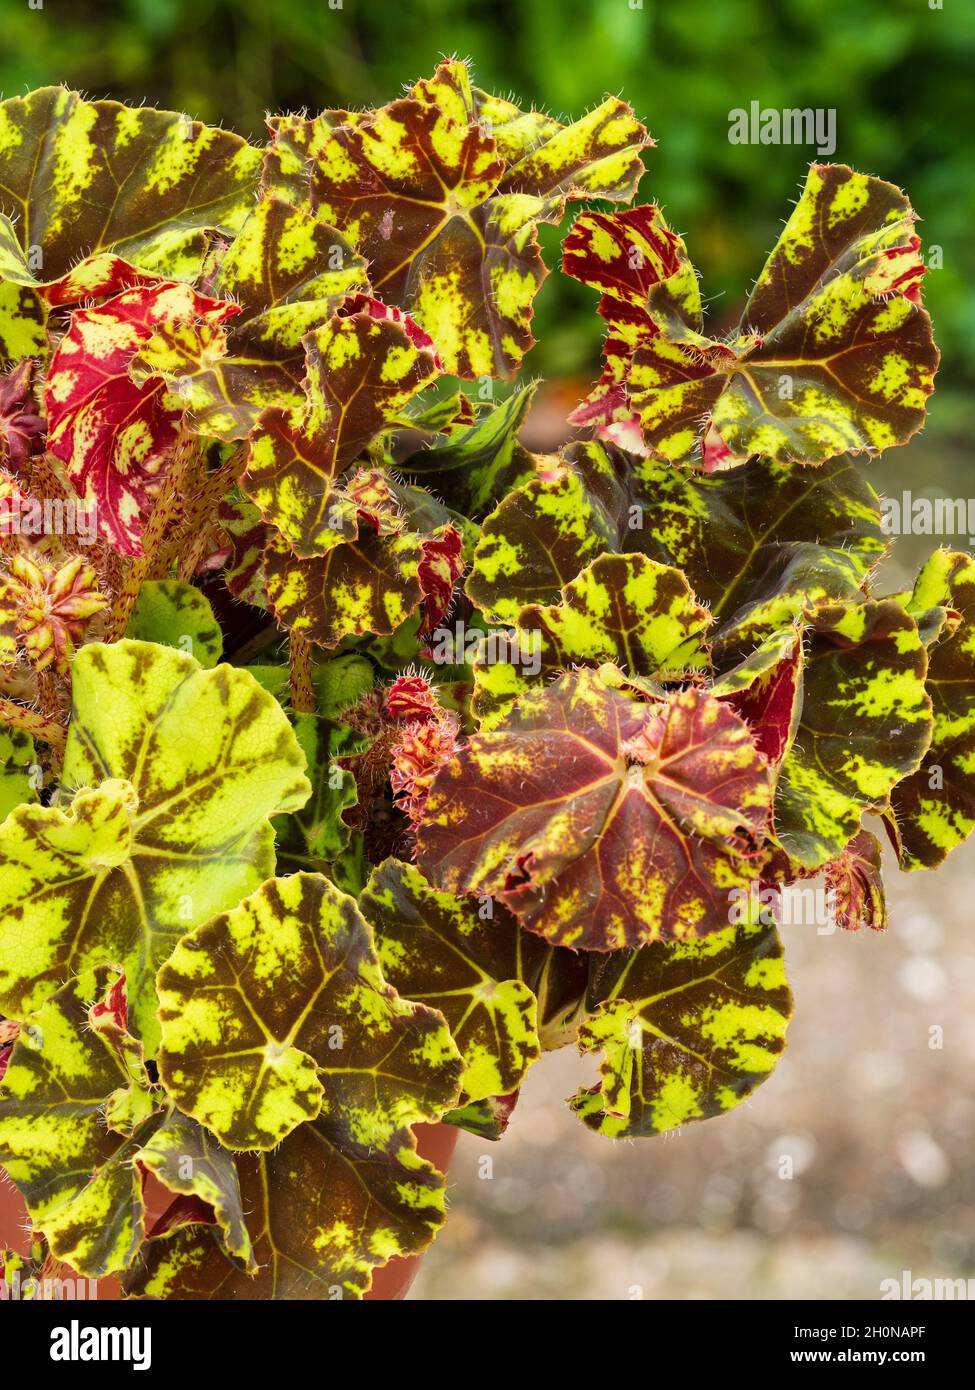 Follaje amarillo y marrón estampado de la tierna planta tipo rex begonia, Begonia 'Zumba' Foto de stock